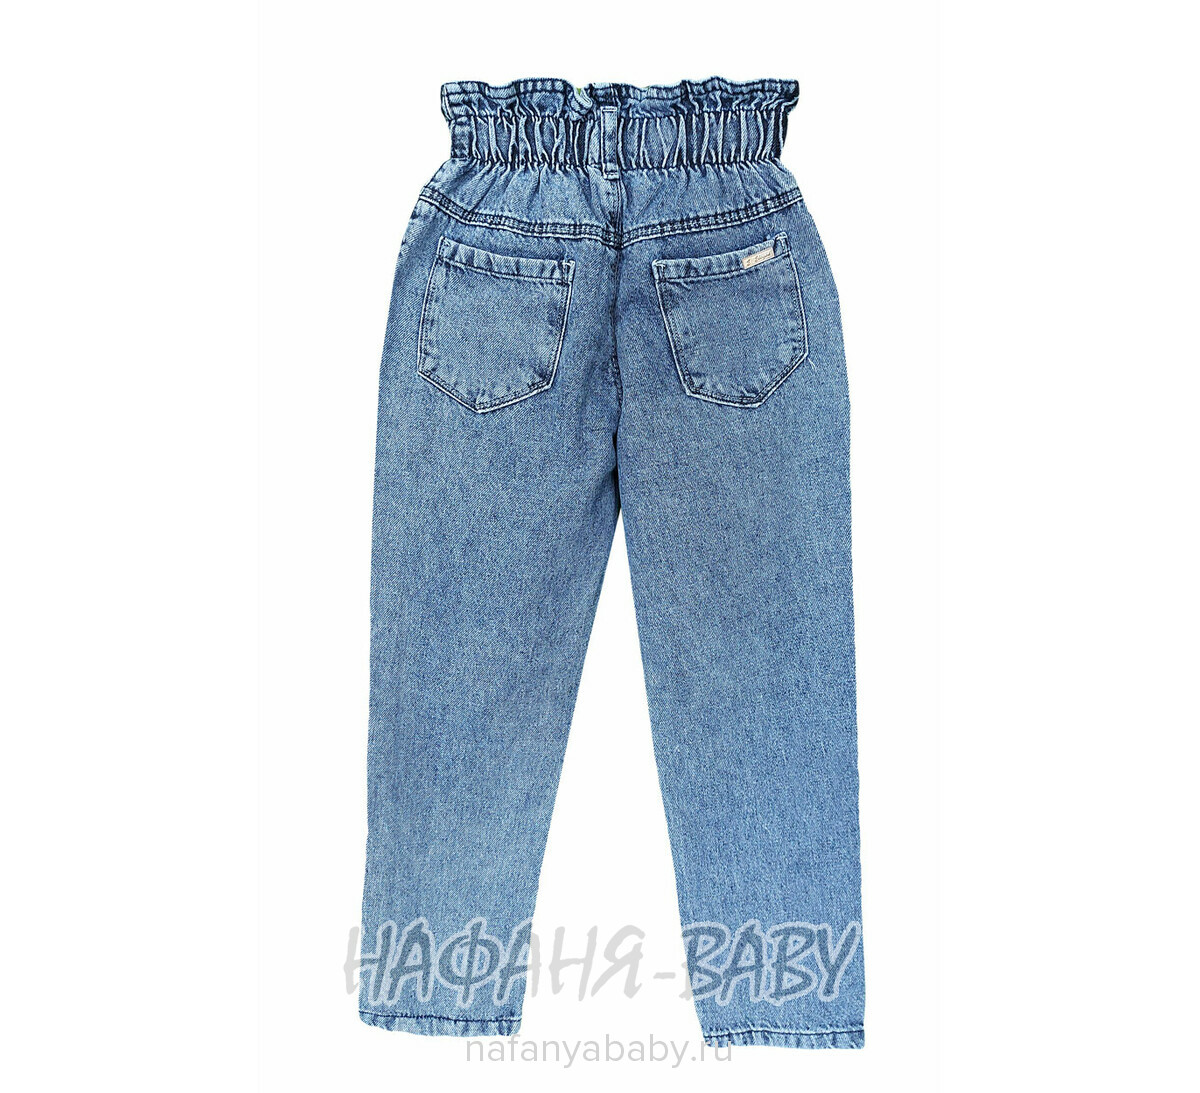 Джинсы ELEYSA Jeans арт: 6131 для девочки от 8 до 12 лет, цвет синий, оптом Турция